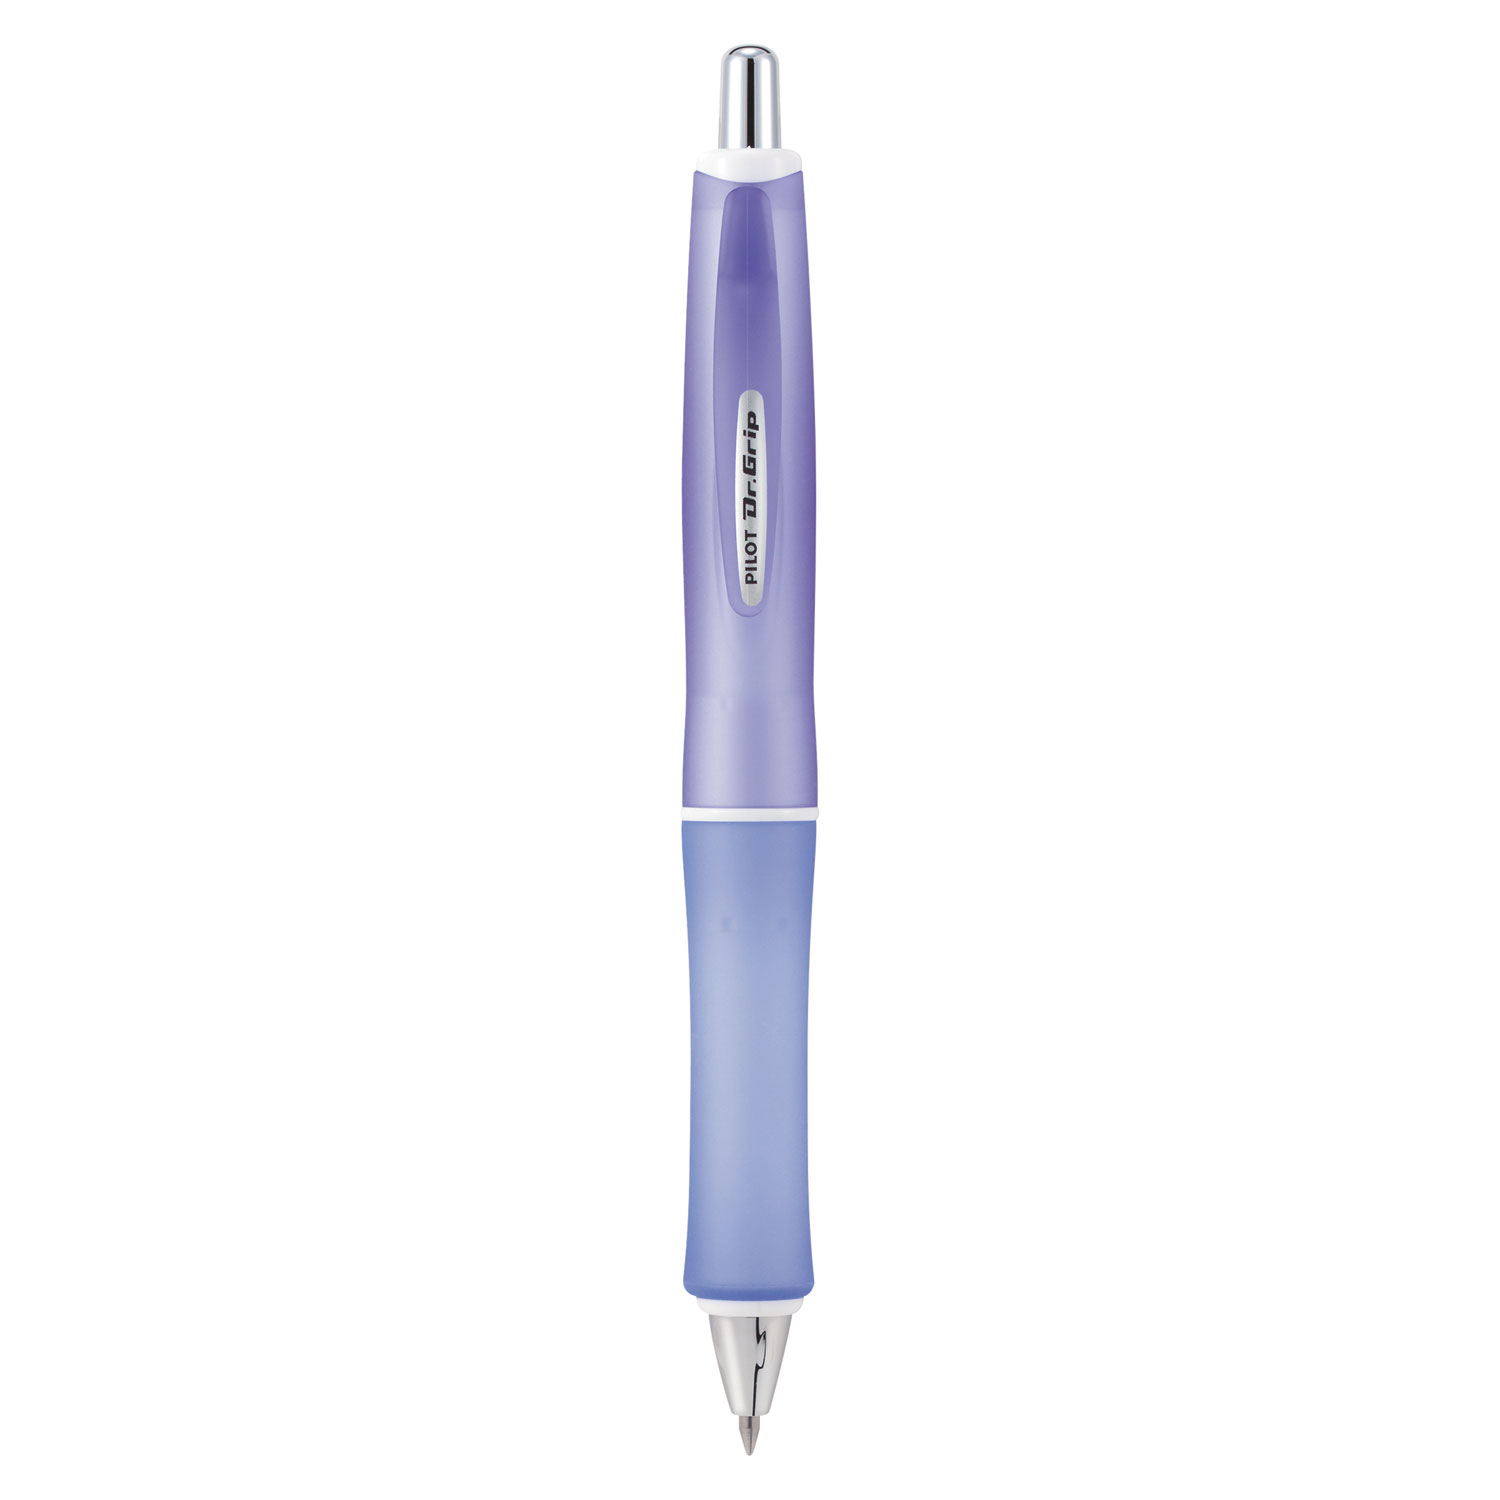  Pilot 36250 Dr. Grip Frosted Retractable Ballpoint Pen, 1mm, Black Ink, Purple Barrel (PIL36250) 